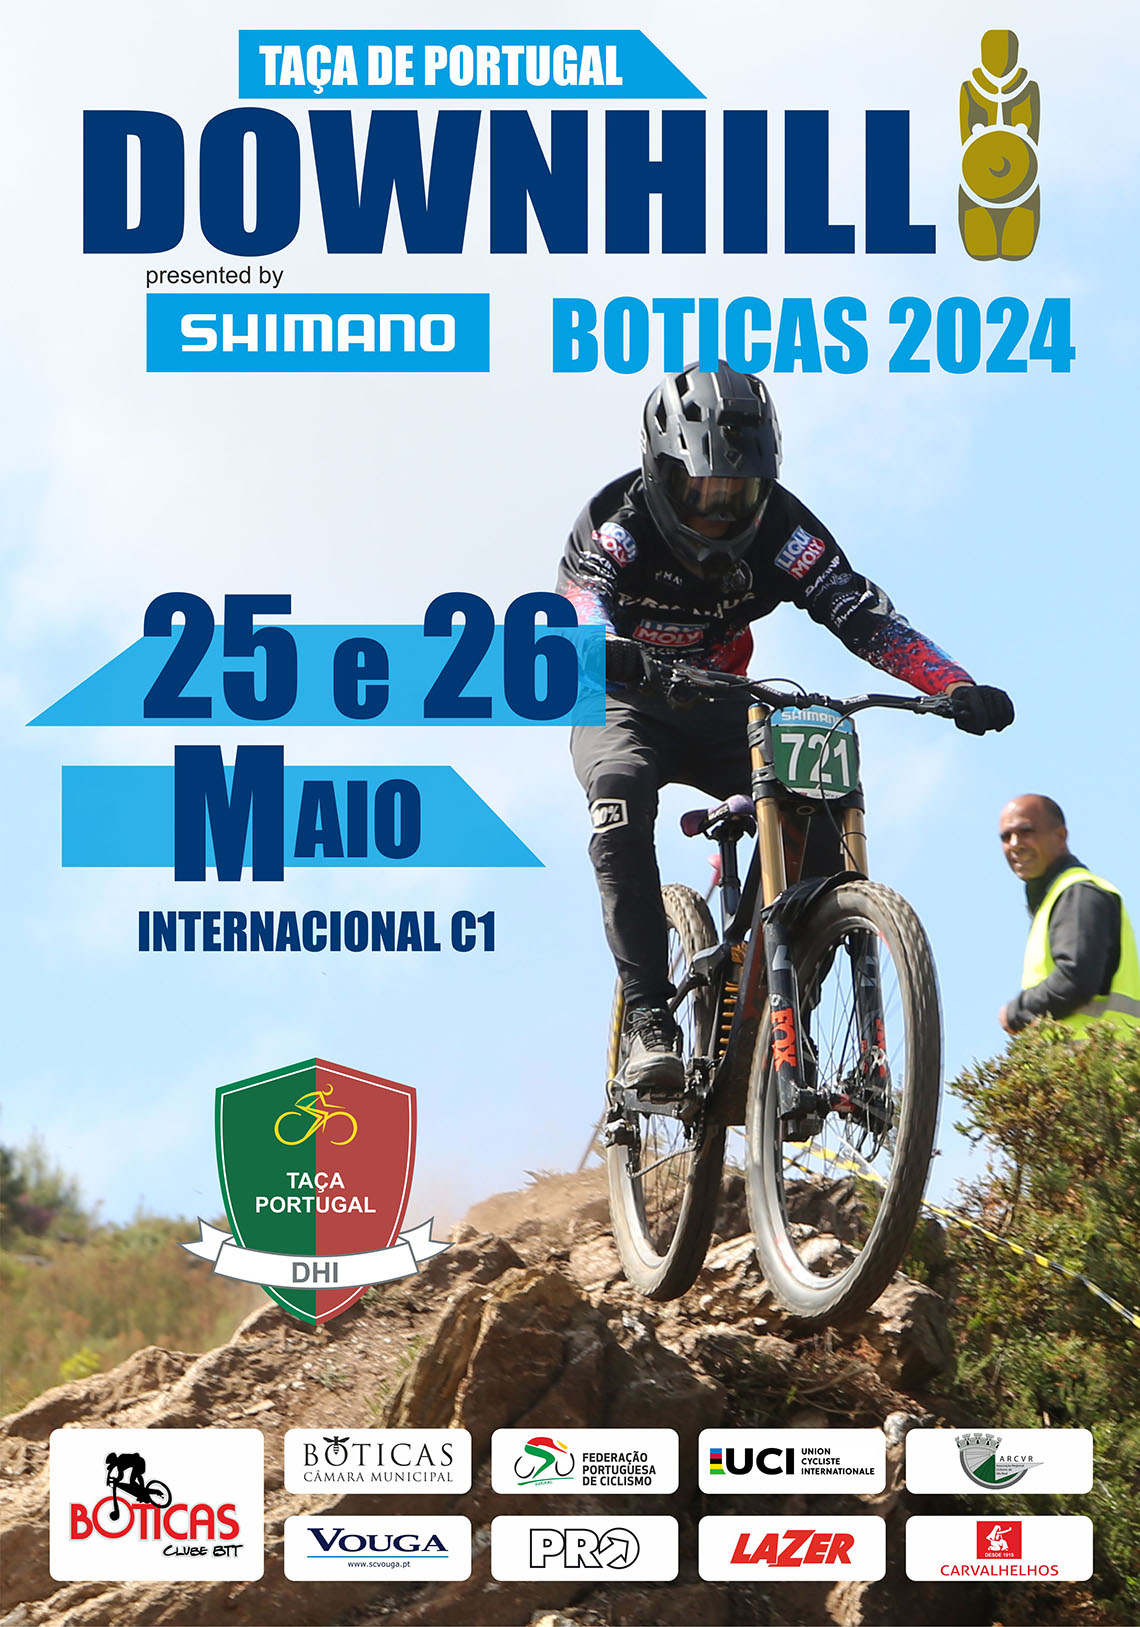 4 Taa de Portugal de Downhill presented by SHIMANO C1 - Boticas